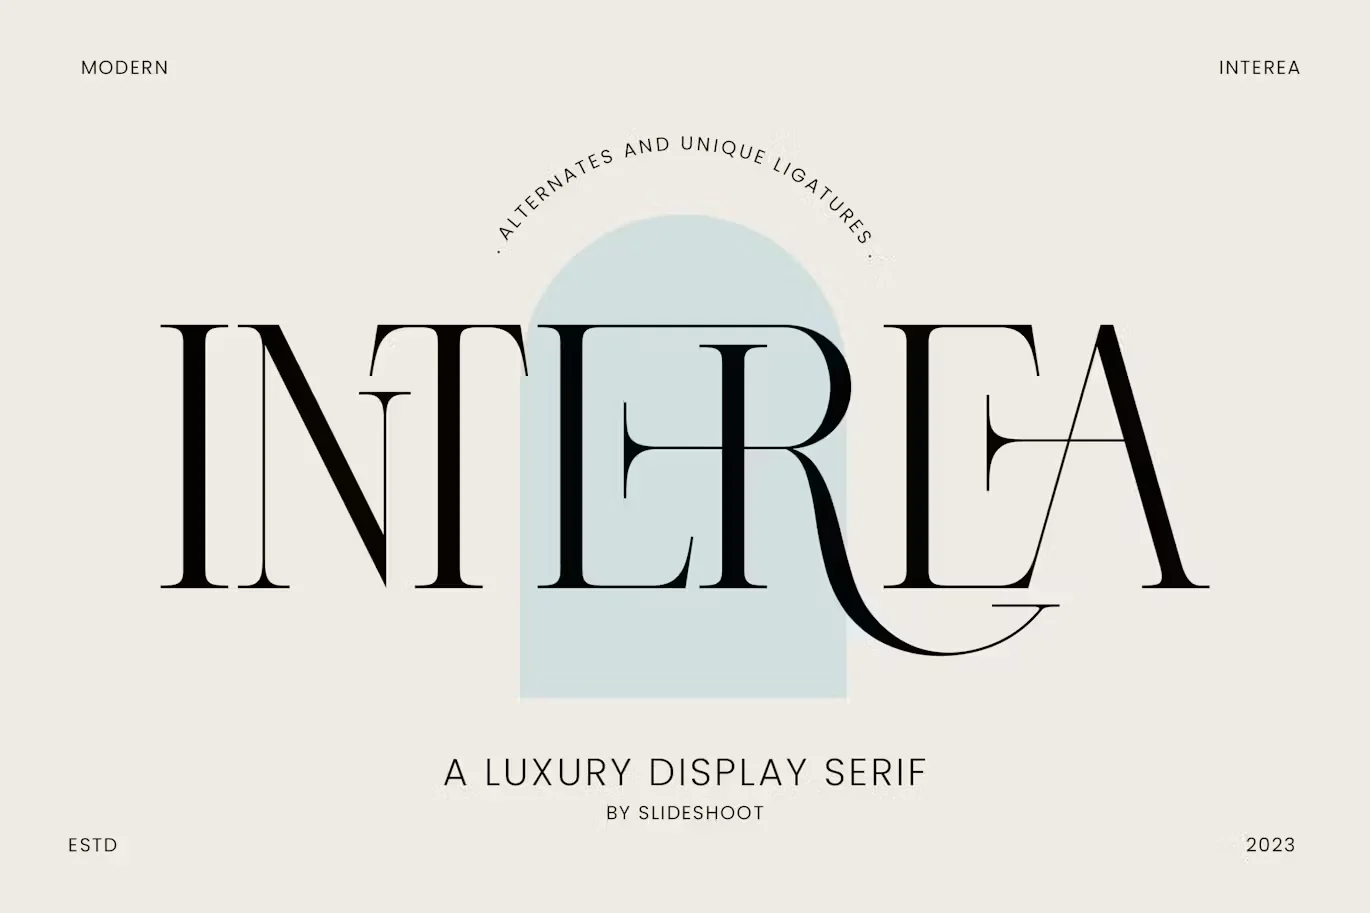 Interea A Luxury Serif Font